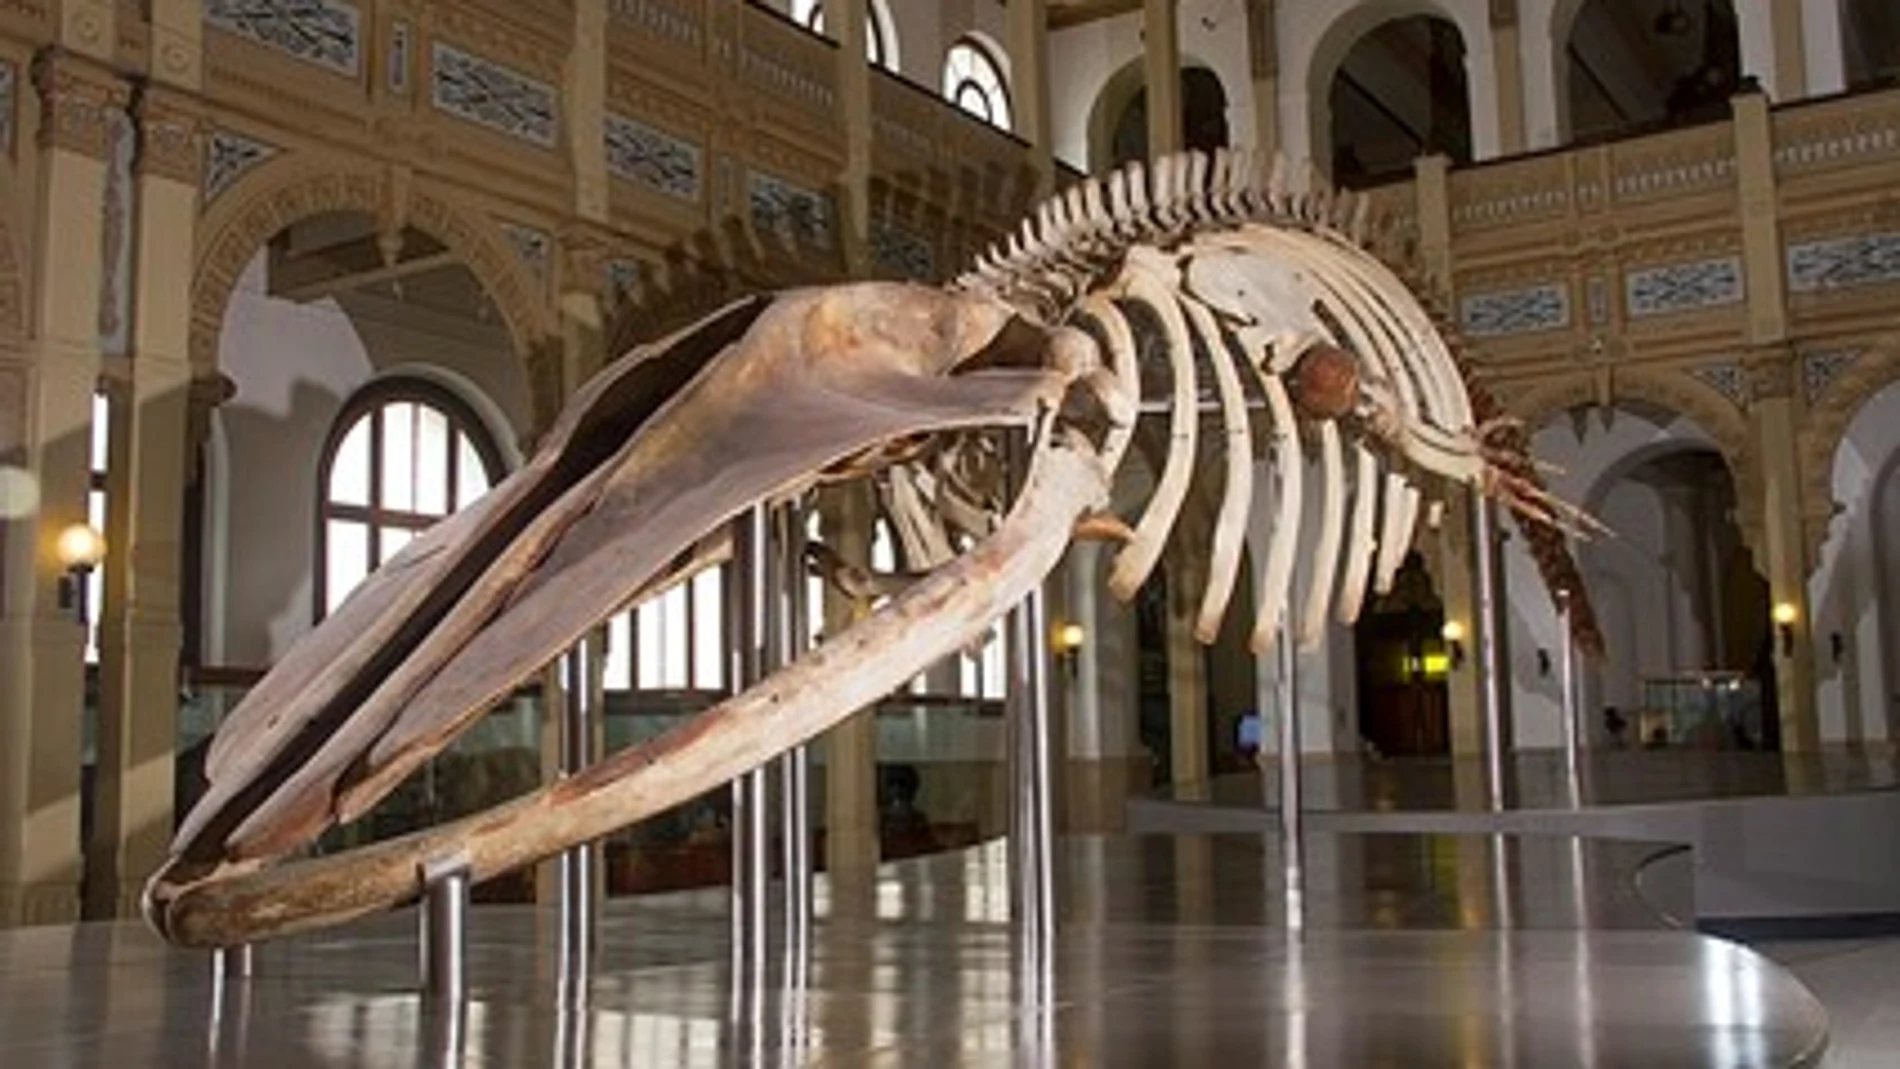 Esqueleto de balaenoptera borealis o rorcual, ubicado en el salón central del Museo Nacional de Historia Natural de Chile.